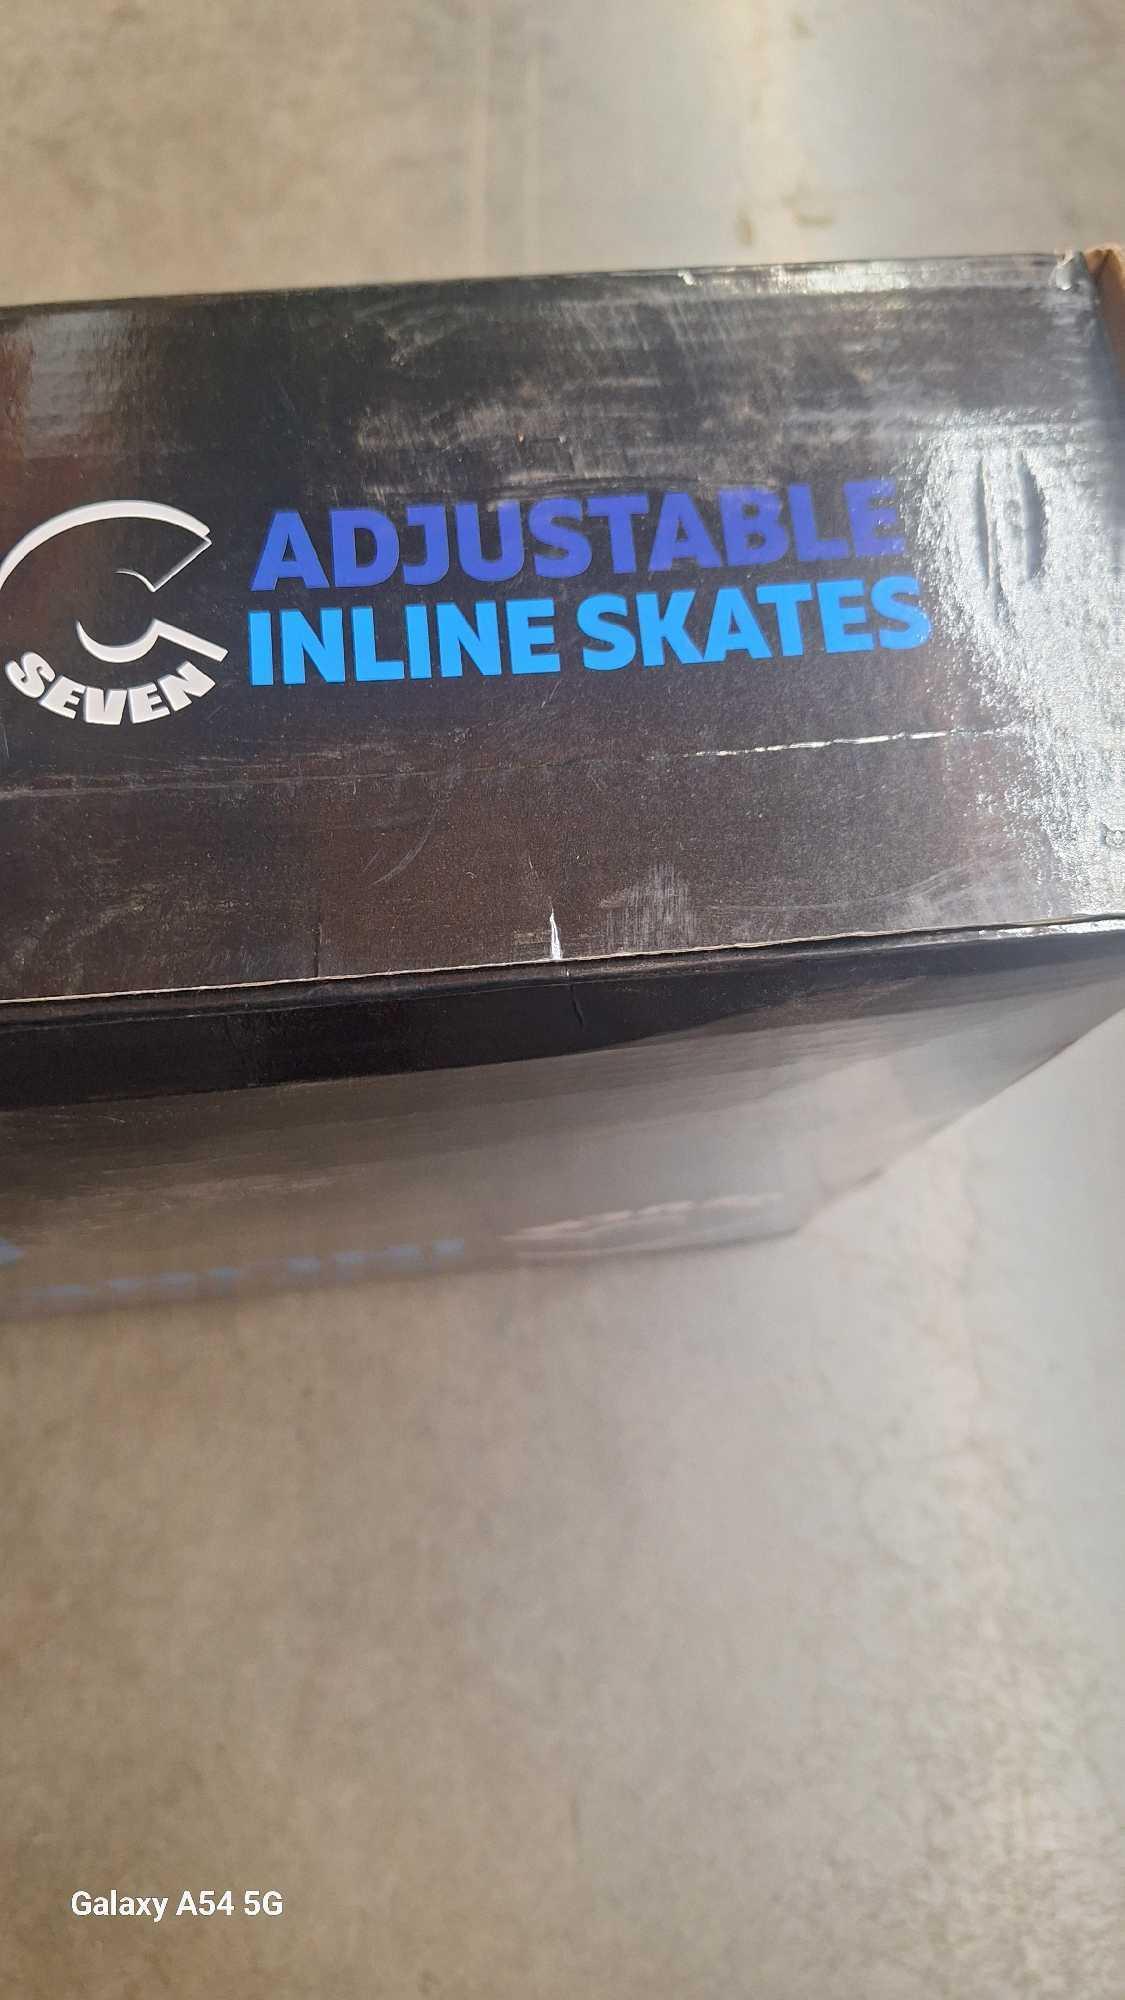 C7 Adjustable Inline Skates, $34.99 MSRP